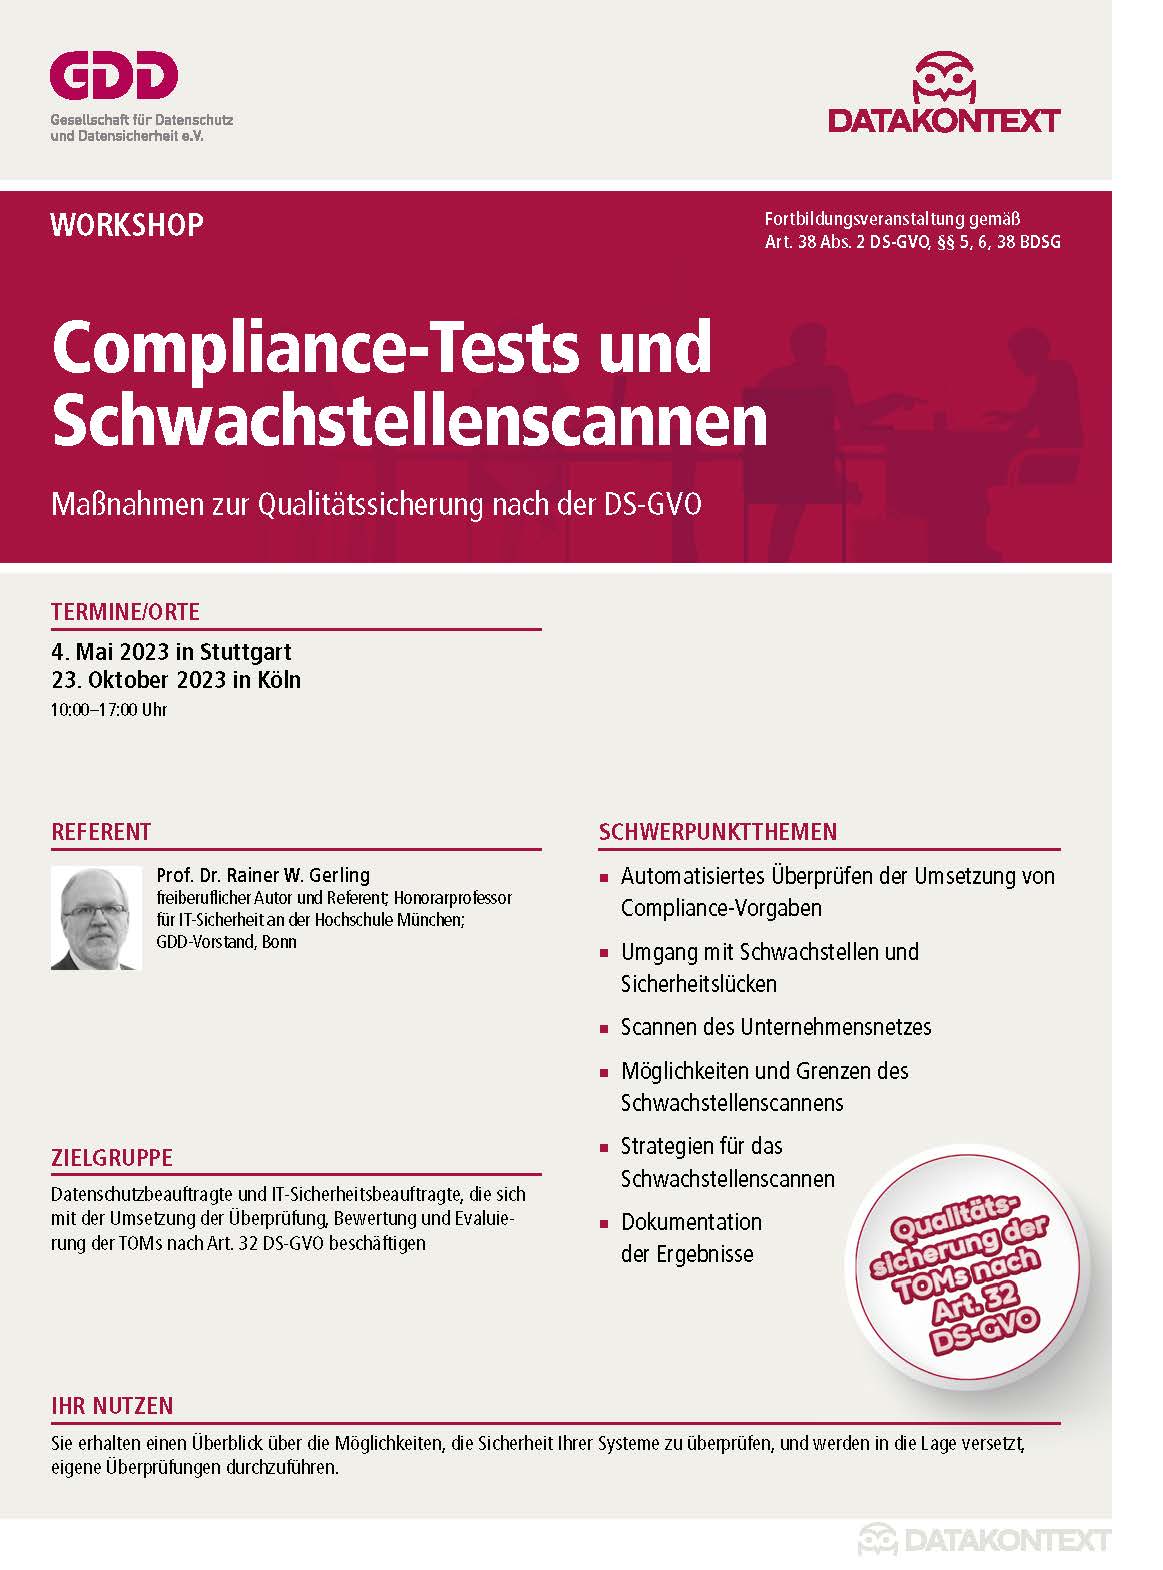 Compliance-Tests und Schwachstellenscannen